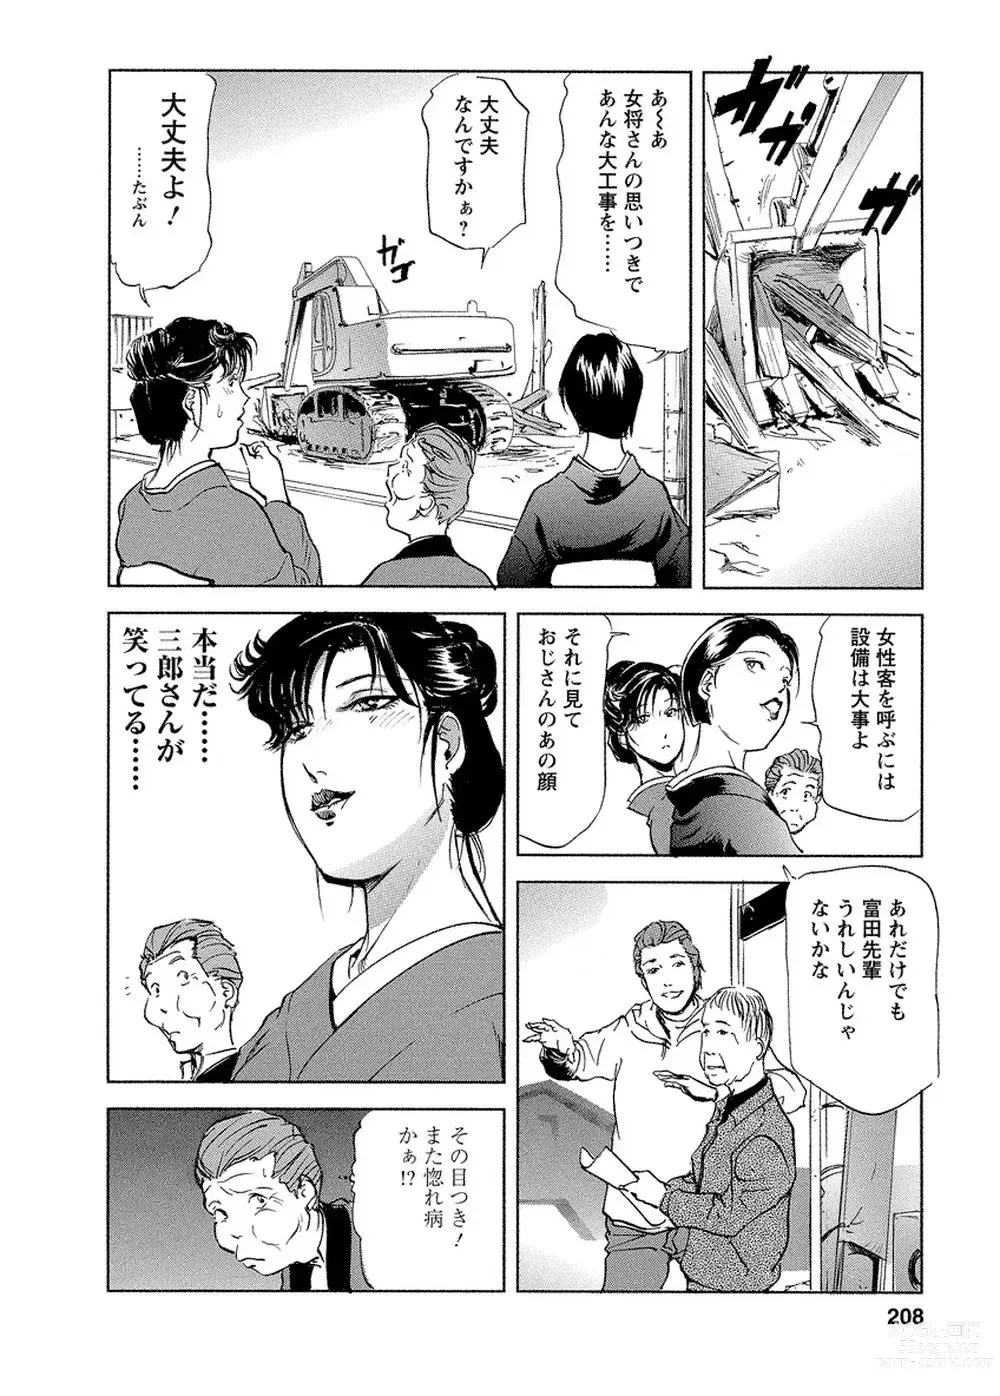 Page 203 of manga Tsuyako no Yu Vol.4